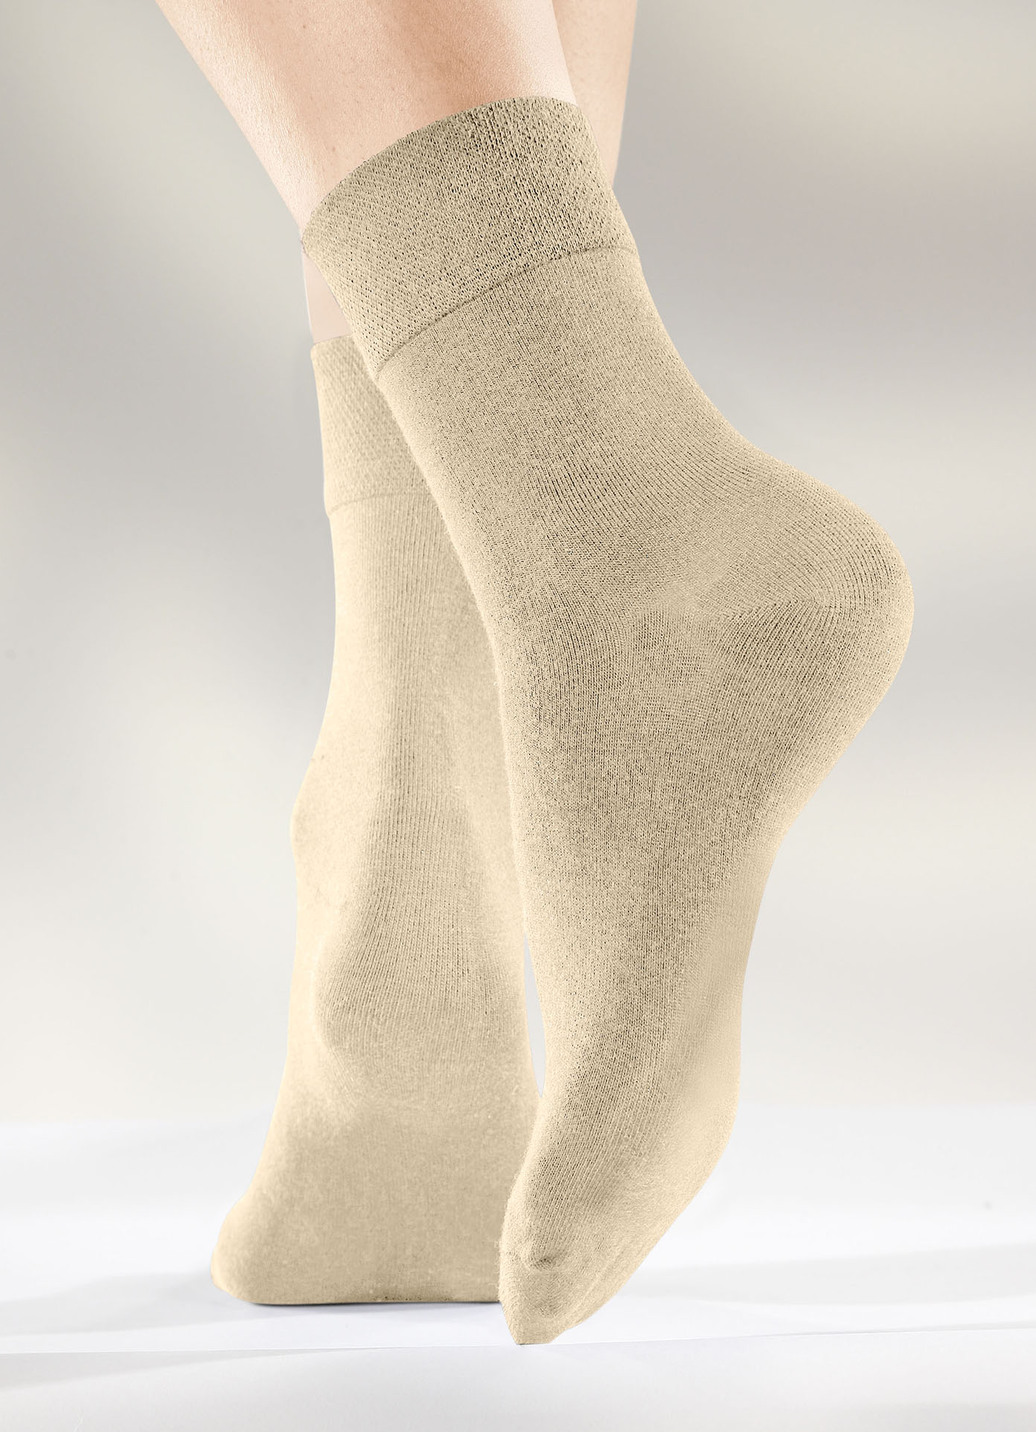 Sechserpack Socken in verschiedenen Farbstellungen, 2X Beige, 2X Sand, 2X Khaki, Größe 2 (Schuhgr. 39-42) von BADER